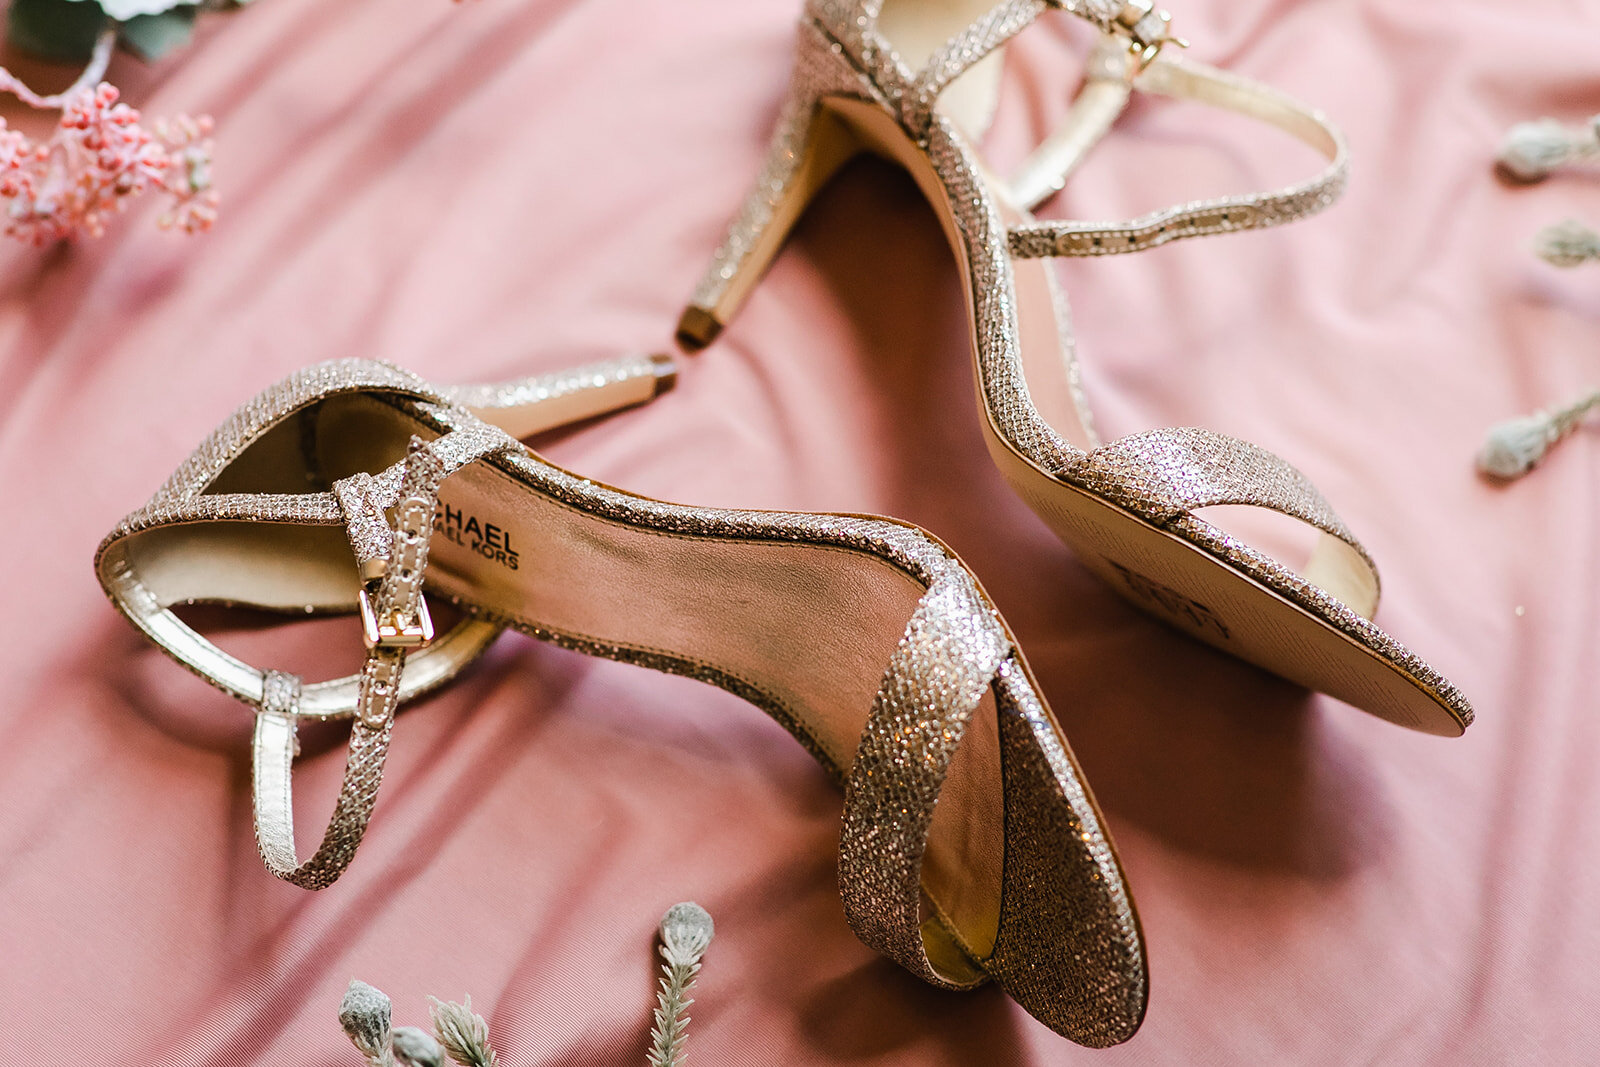  bride’s wedding shoes  